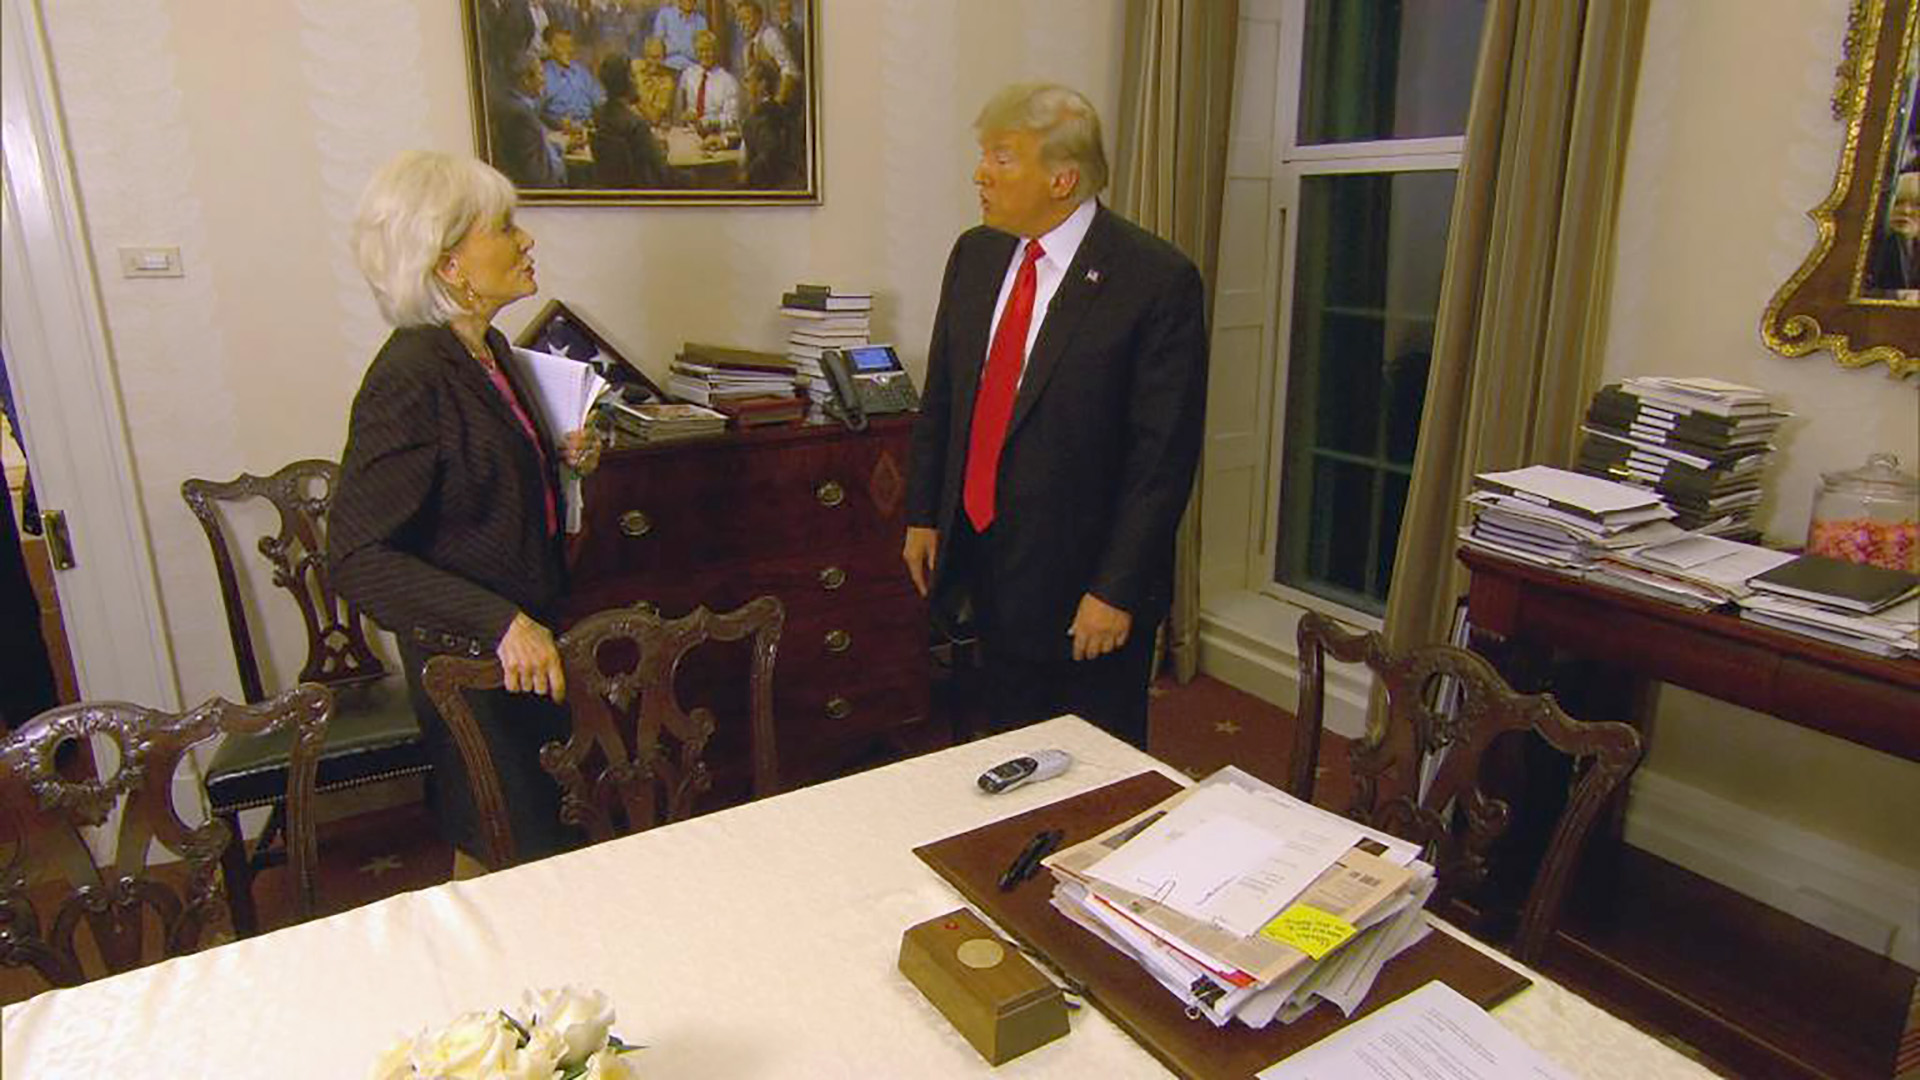 La pintura está colgada en la Casa Blanca, lo cual fue advertido durante una entrevista a Trump